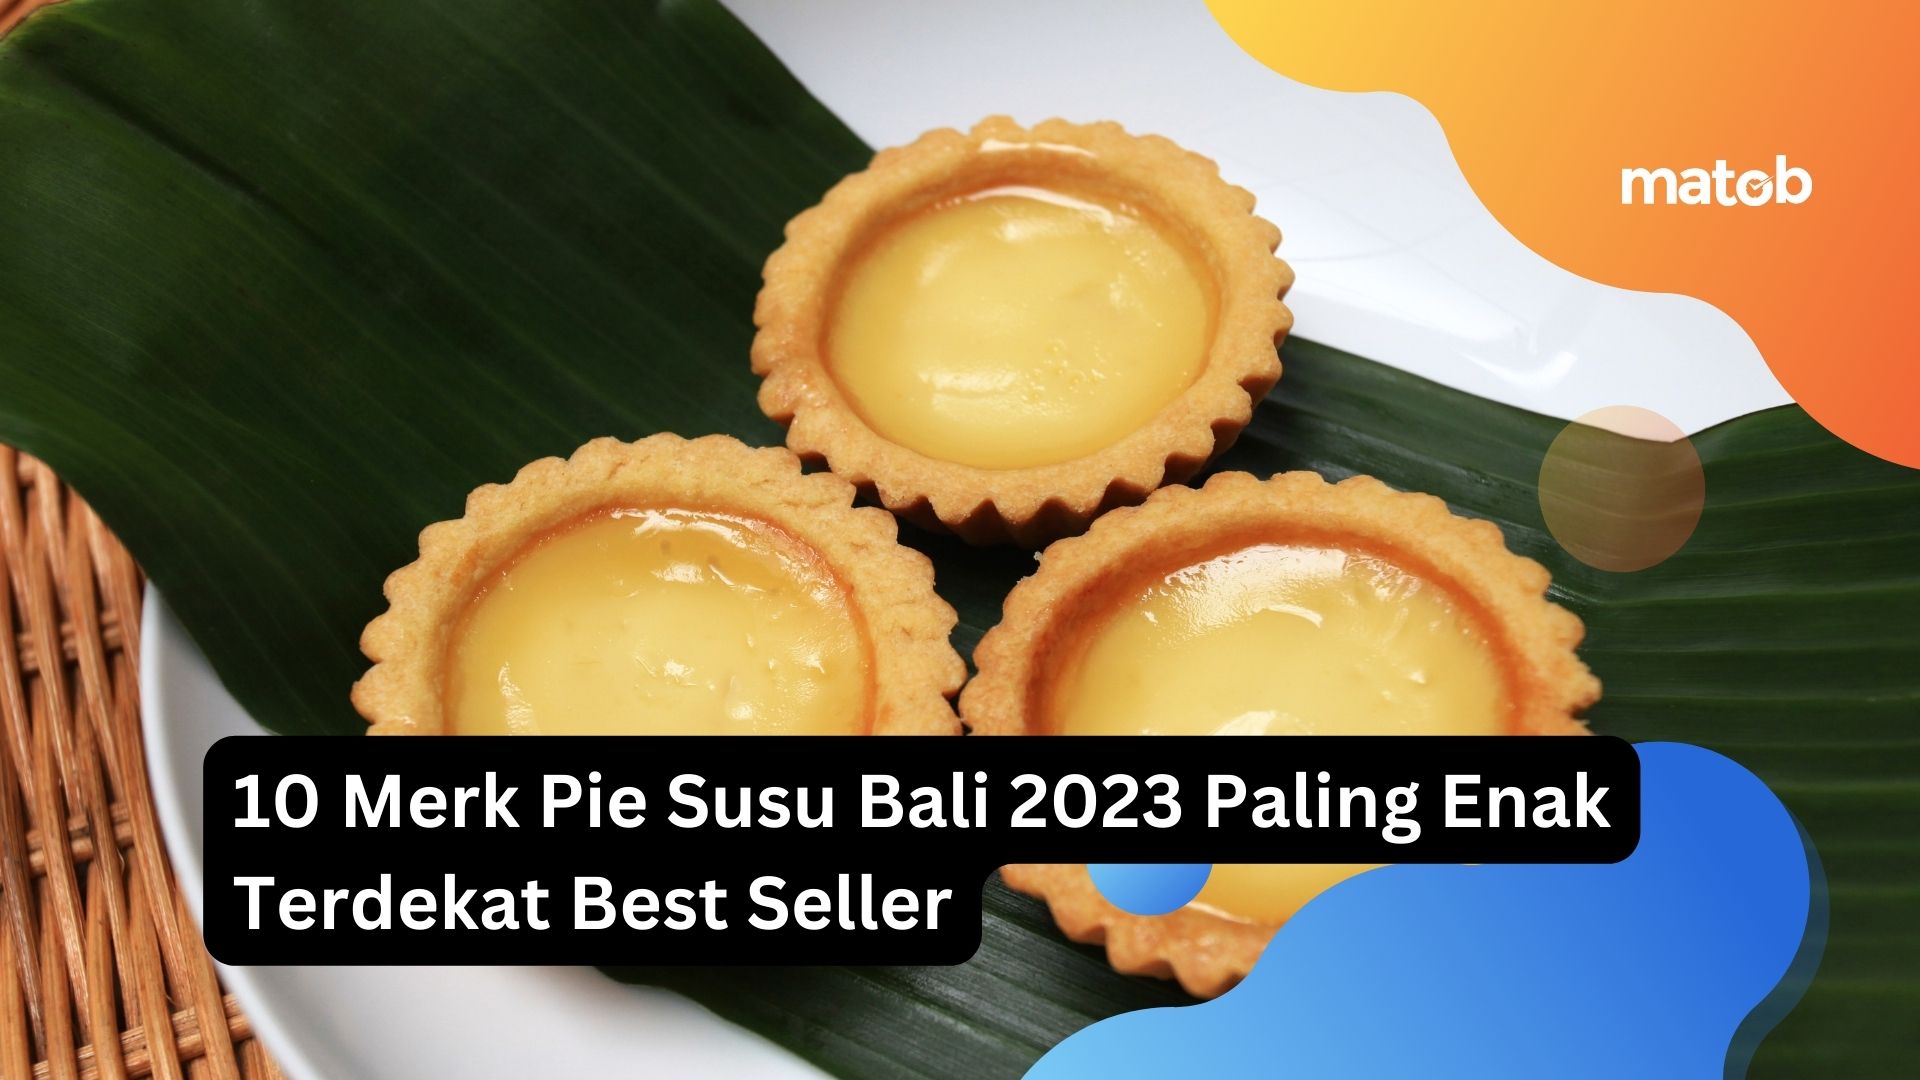 10 Merk Pie Susu Bali 2023 Paling Enak Terdekat Best Seller